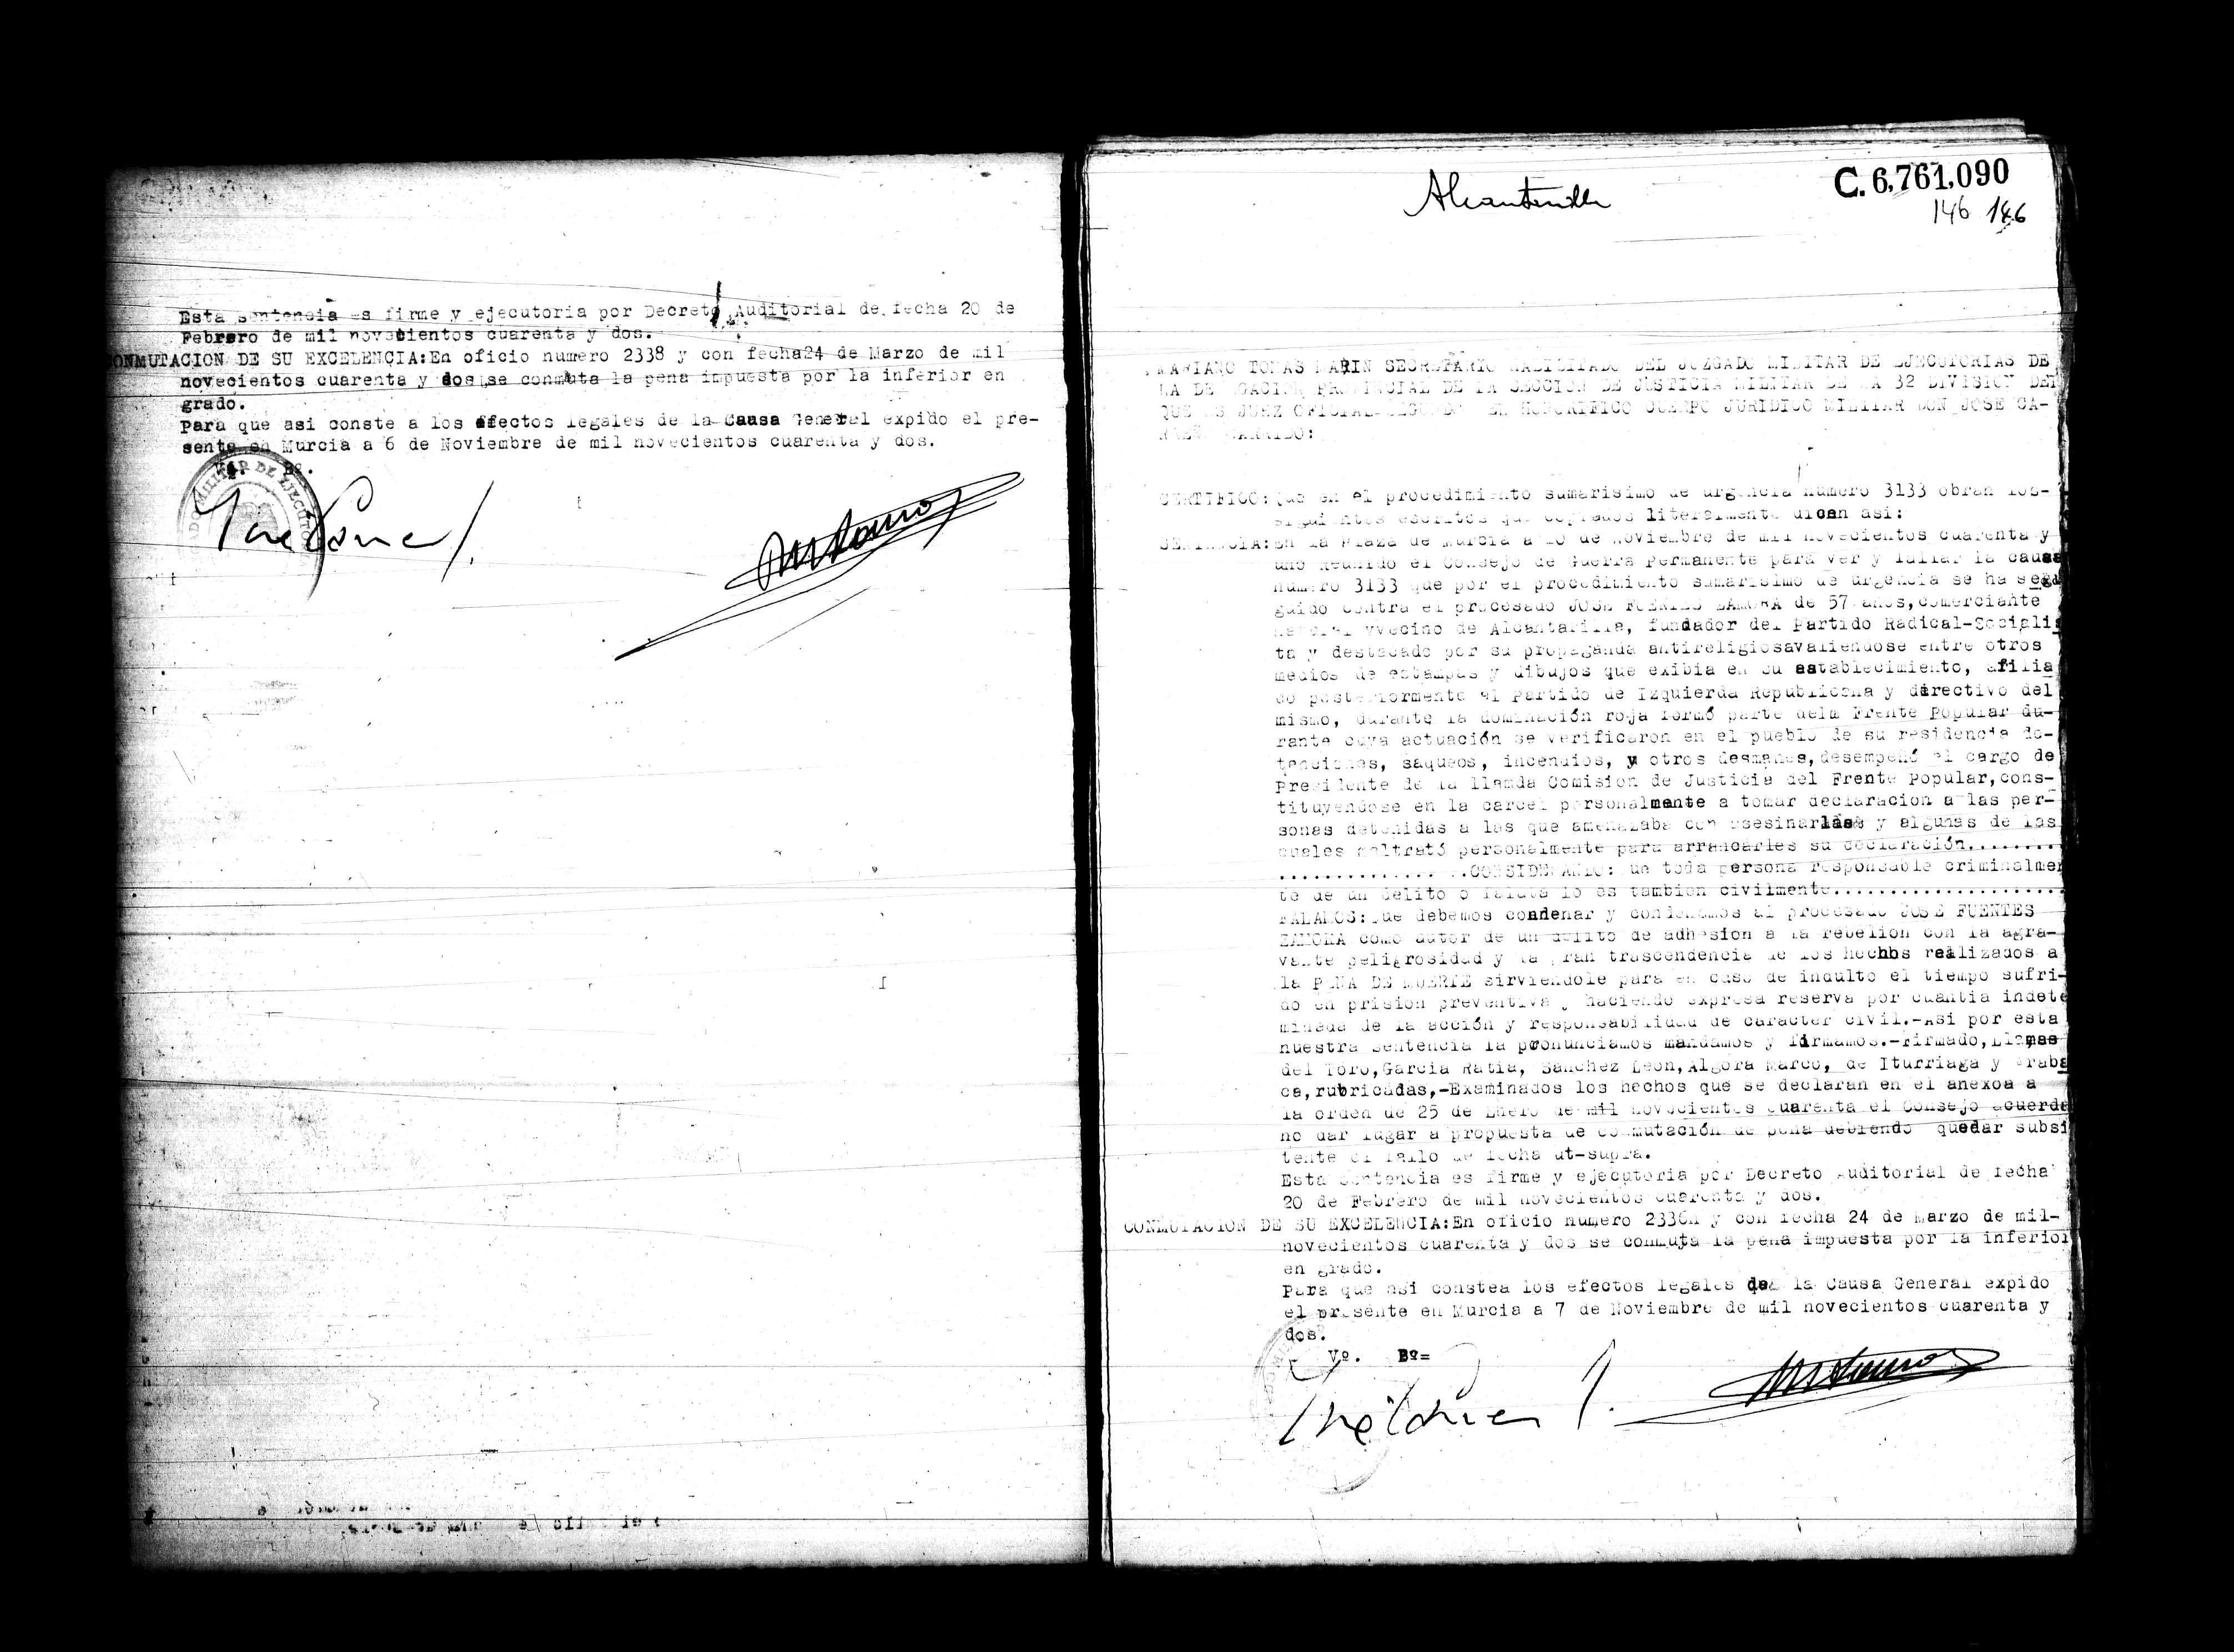 Certificado de la sentencia pronunciada contra José Fuentes Zamora, causa 3133, el 7 de noviembre de 1942 en Murcia.